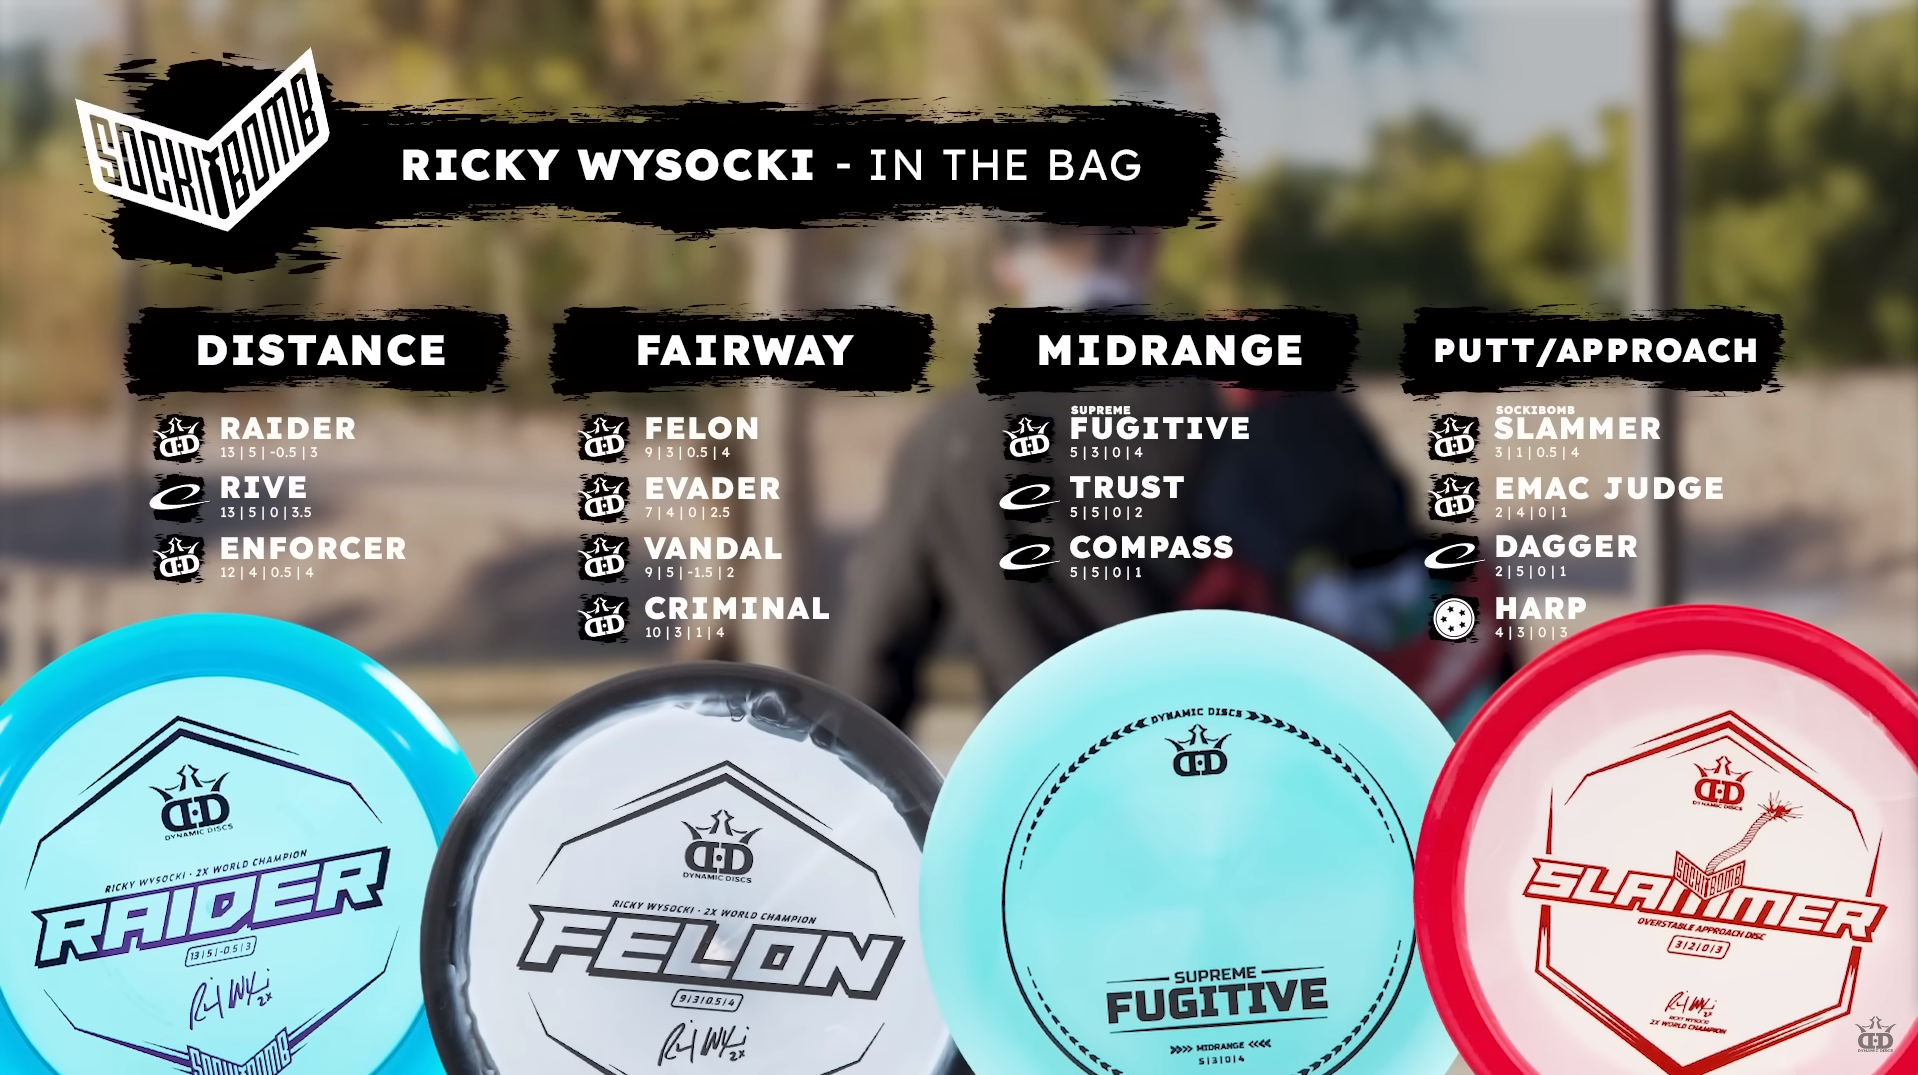 Ricky Wysocki 2023 in the bag discs with Dynamic Discs